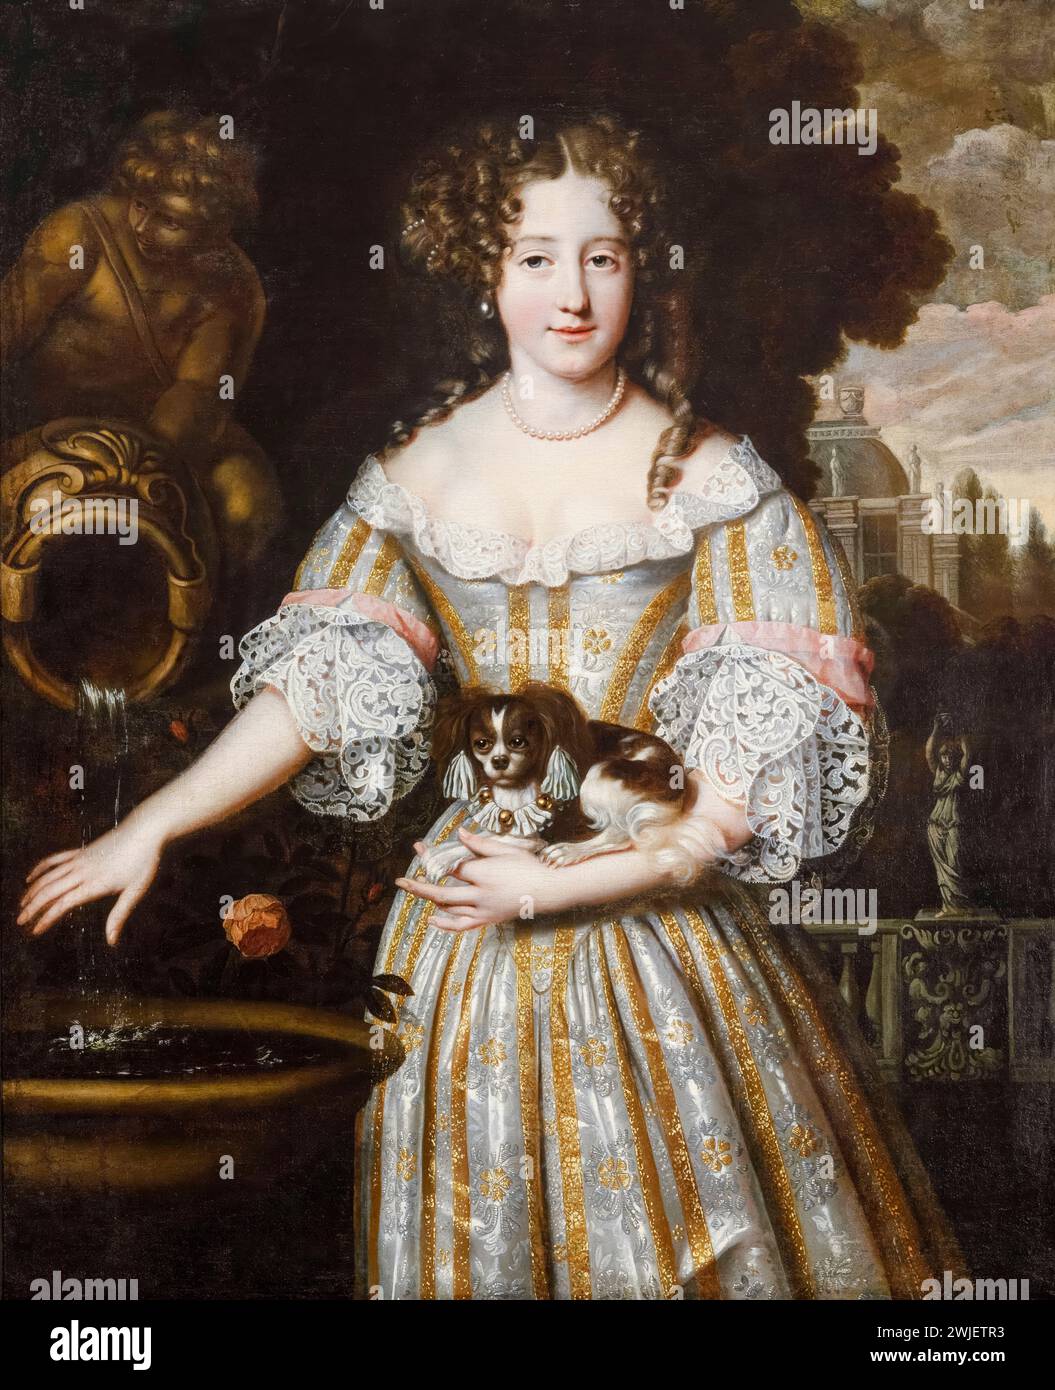 Louise de Kéroualle, Herzogin von Portsmouth, (1649–1734), Geliebte von König Karl II. Von England, Porträtgemälde in Öl auf Leinwand von Henri Gascar, um 1670 Stockfoto